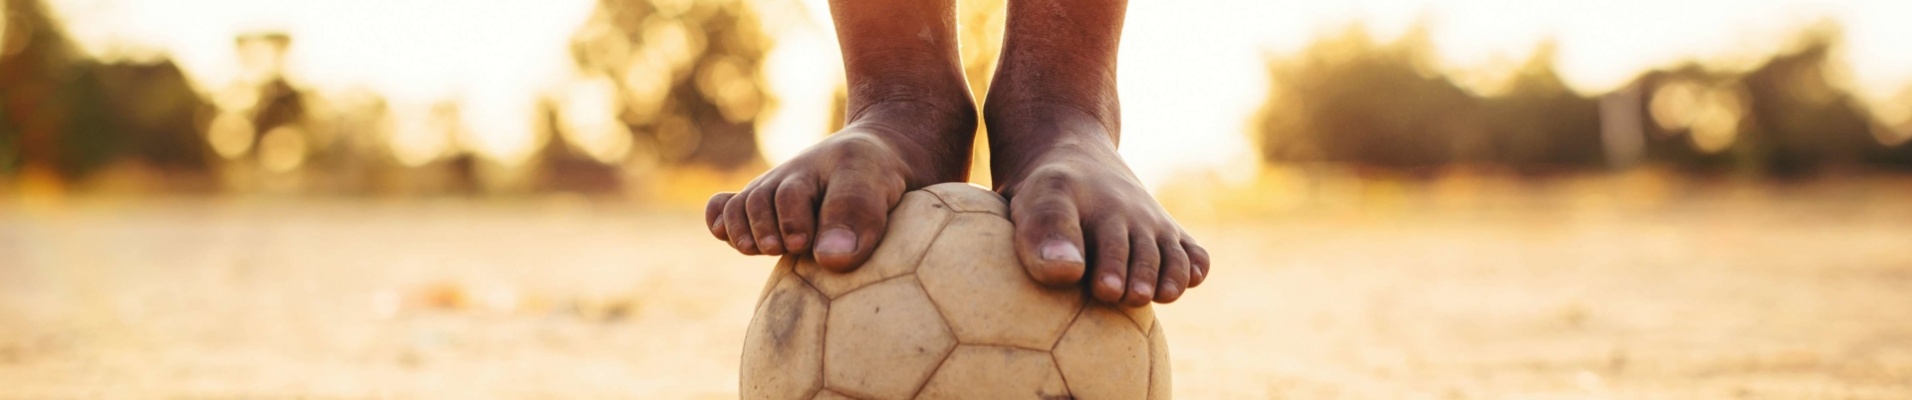 jeune Brésilien en équilibre sur un ballon de football